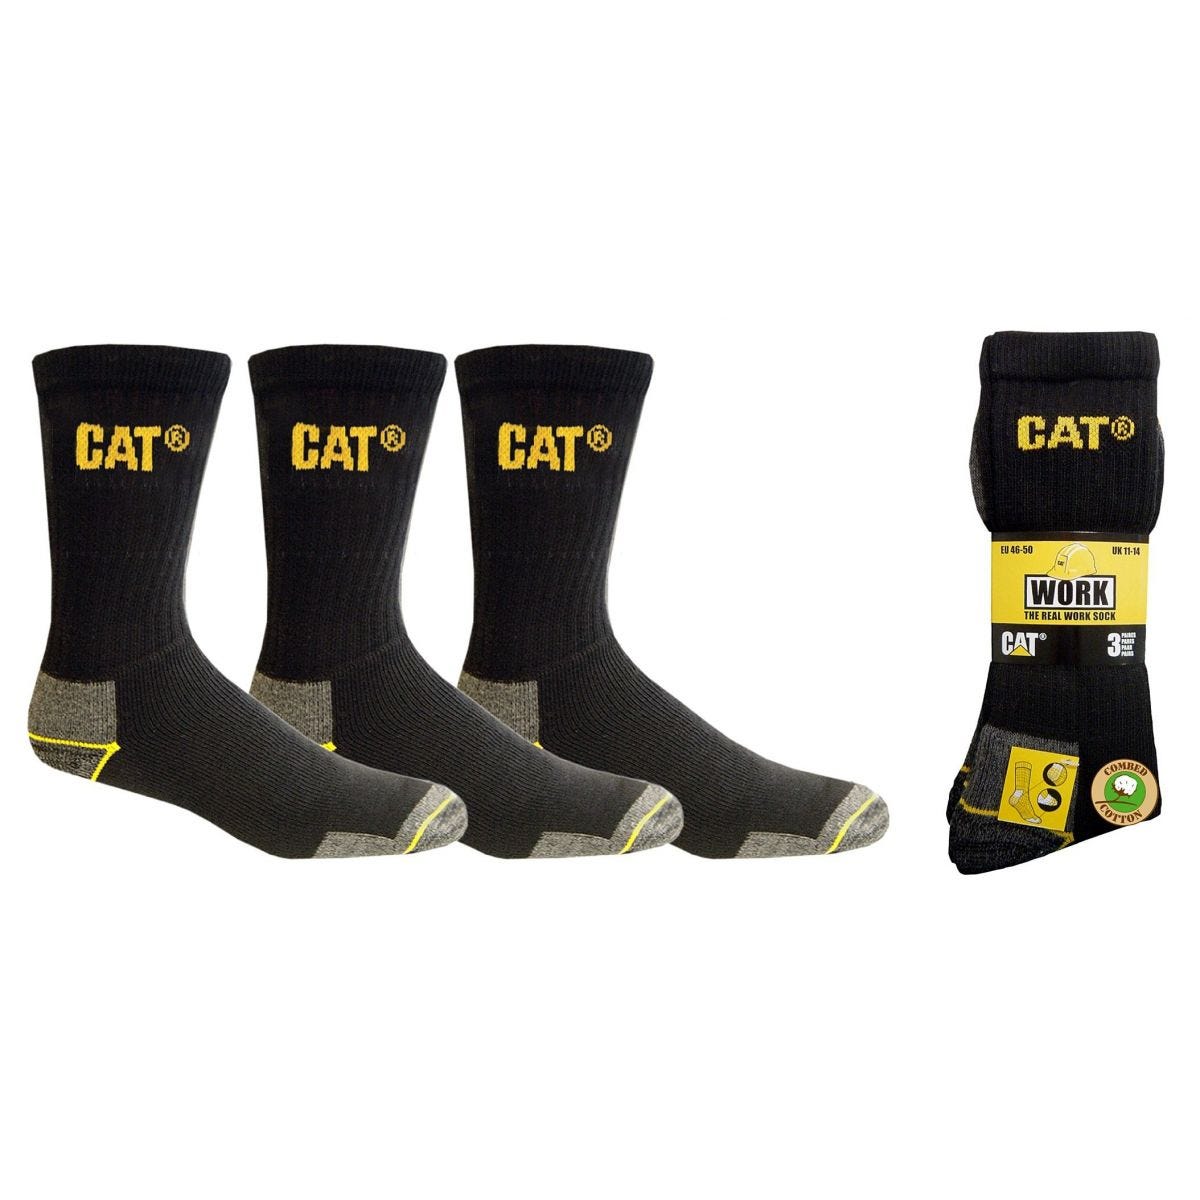 Lot de 3 paires de chaussettes CAT Noir - Caterpillar - Taille 46/50 1